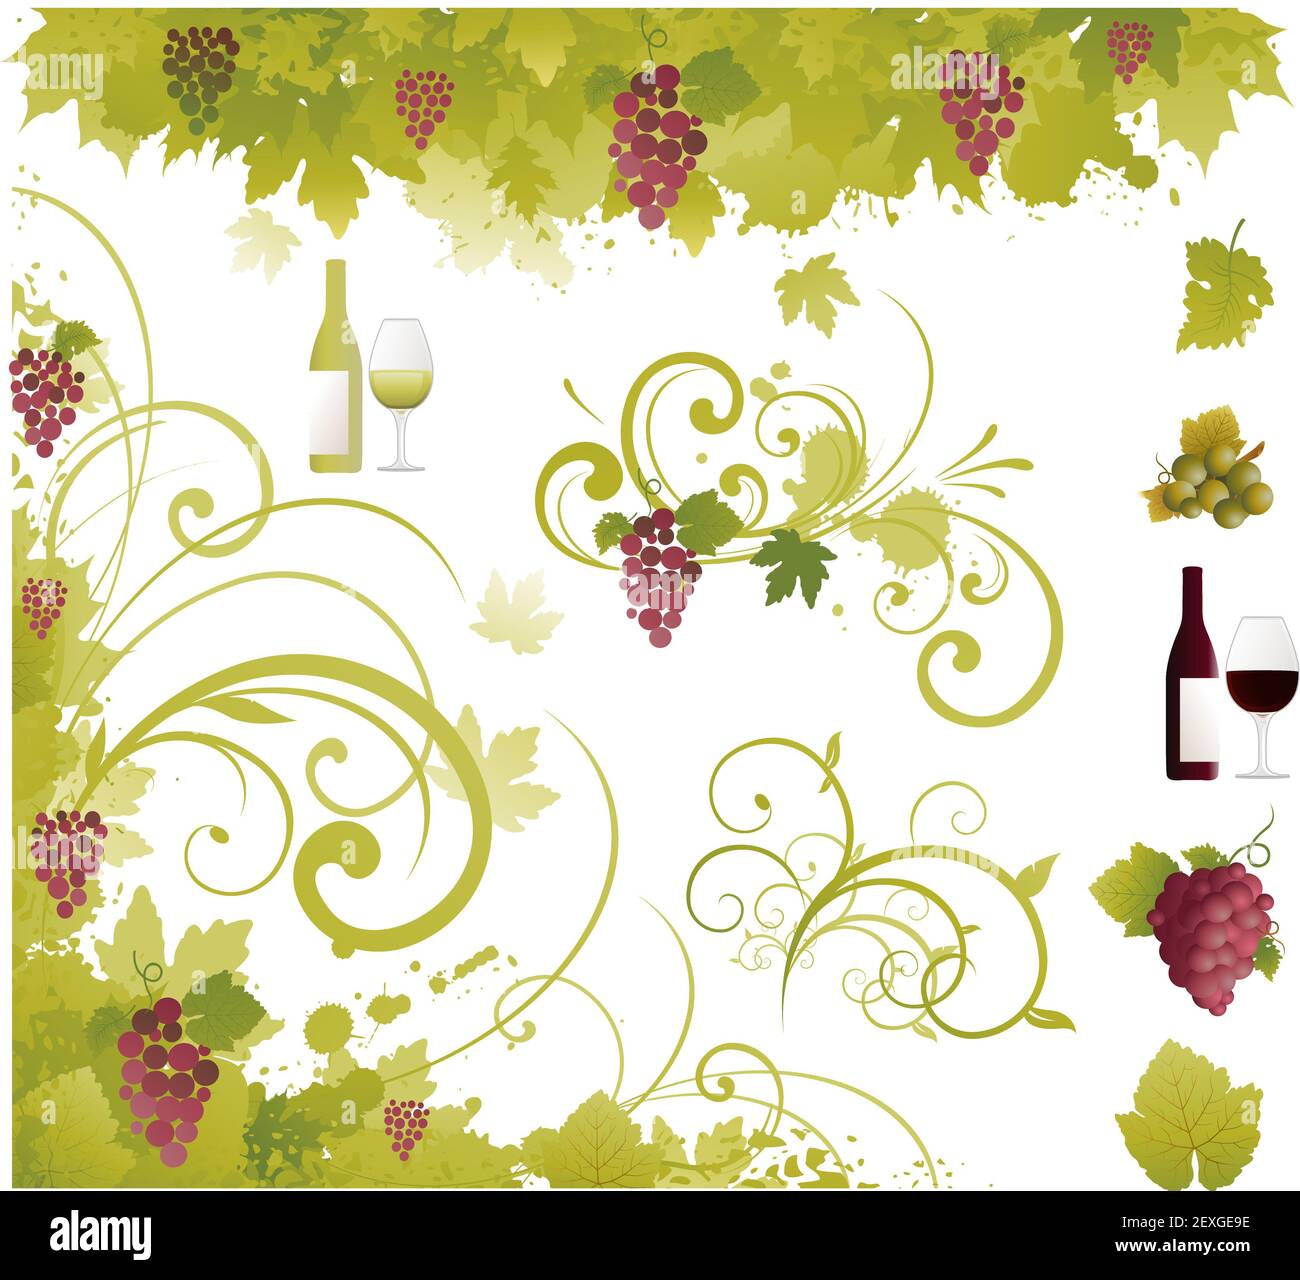 Wine decorative elements Stock Photo